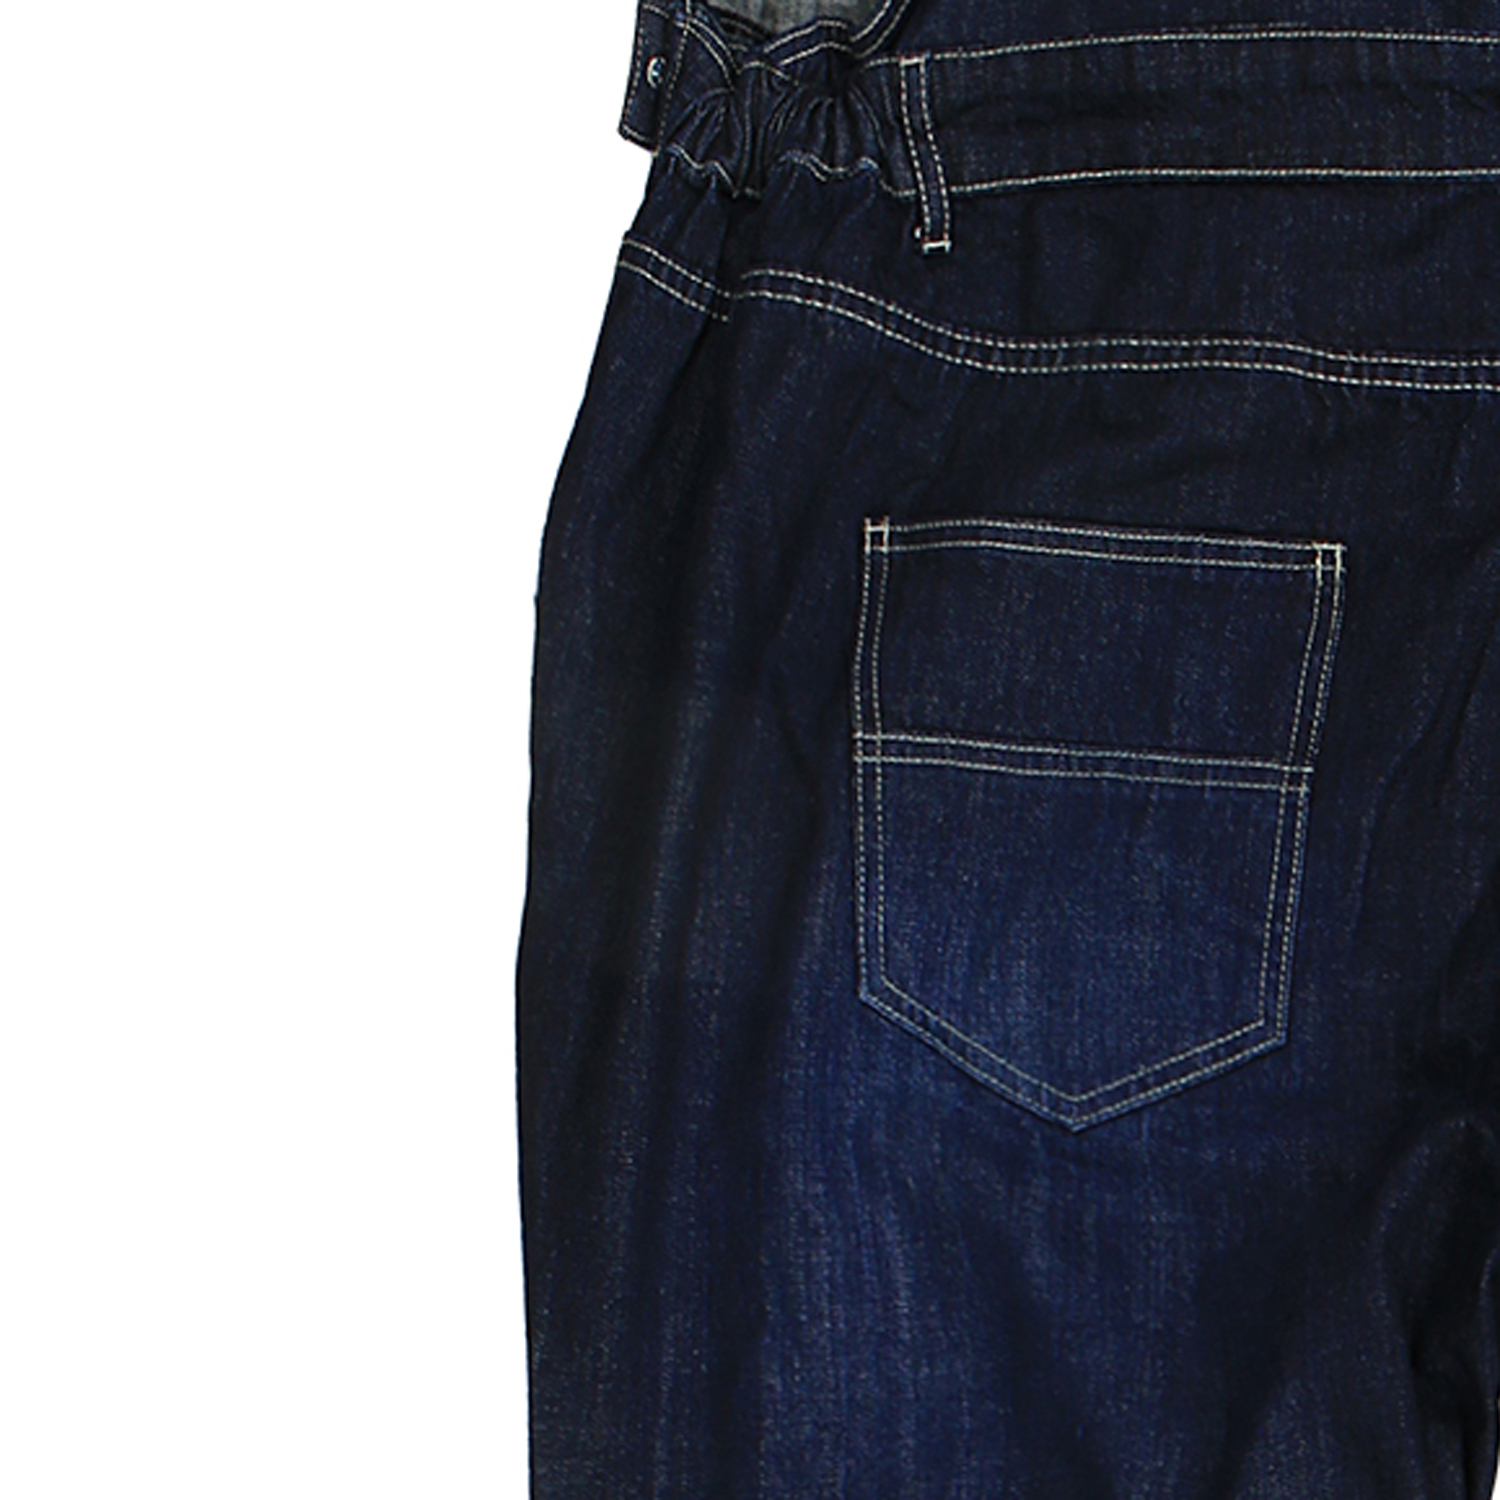 Jeans-Latzhose in dunkelblau- stonewash von Abraxas in Übergrößen bis 12XL